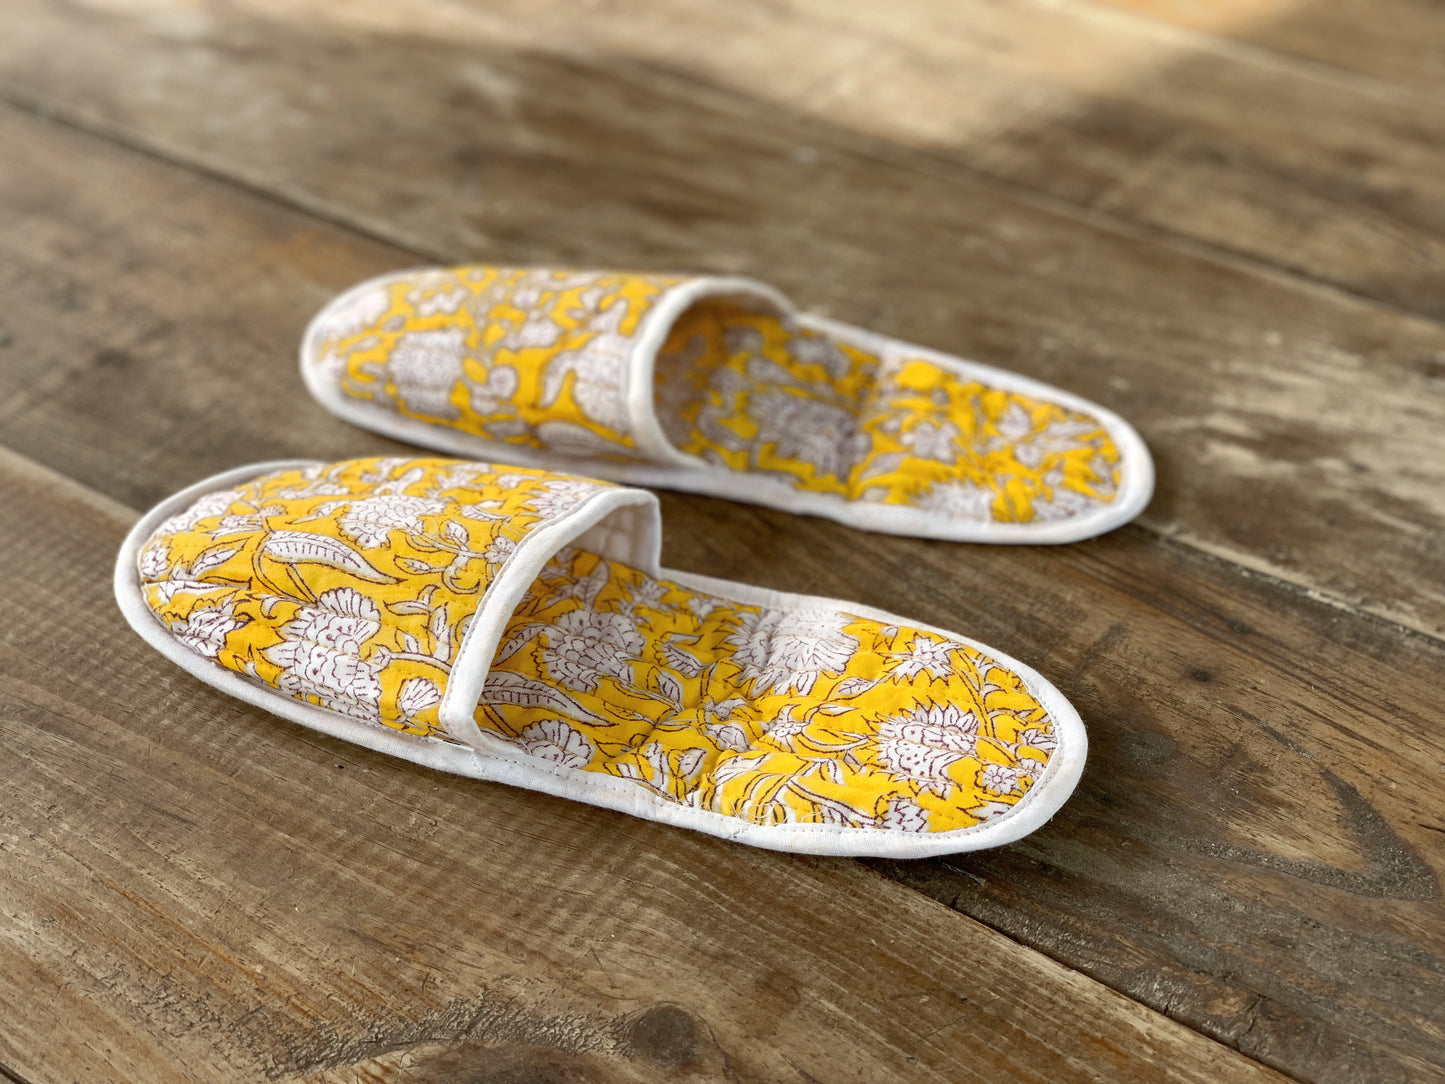 SET regalo baño · Scrunchie coletero, bolsa de aseo & zapatillas a juego · Algodón puro estampado block print en India · Gris amarillo